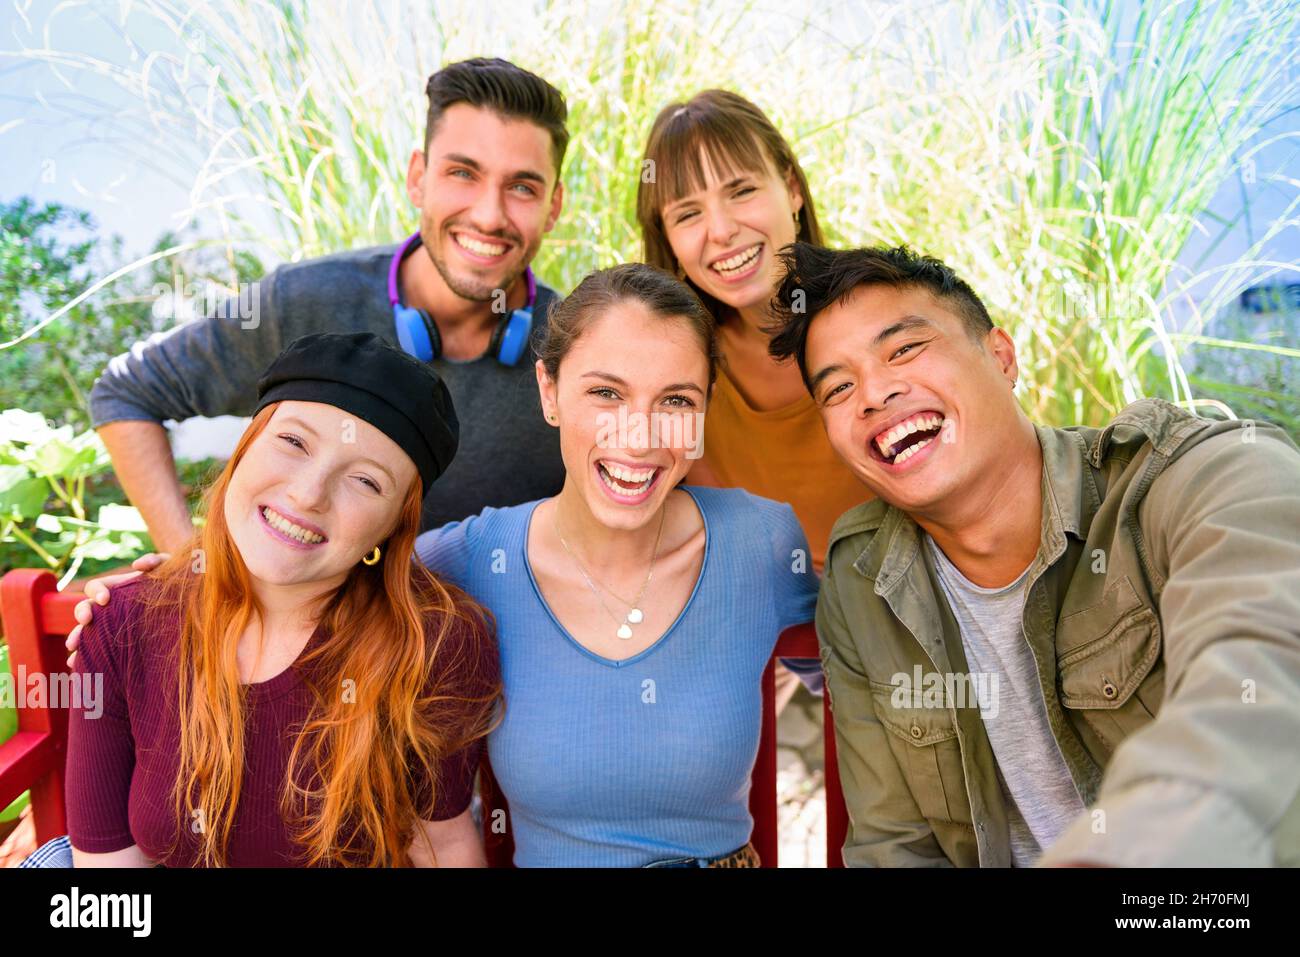 Gruppo di allegri amici multietnici maschi e femmine in abiti casual sorridenti e guardando la macchina fotografica mentre si prende selfie in giardino verde il giorno di sole Foto Stock